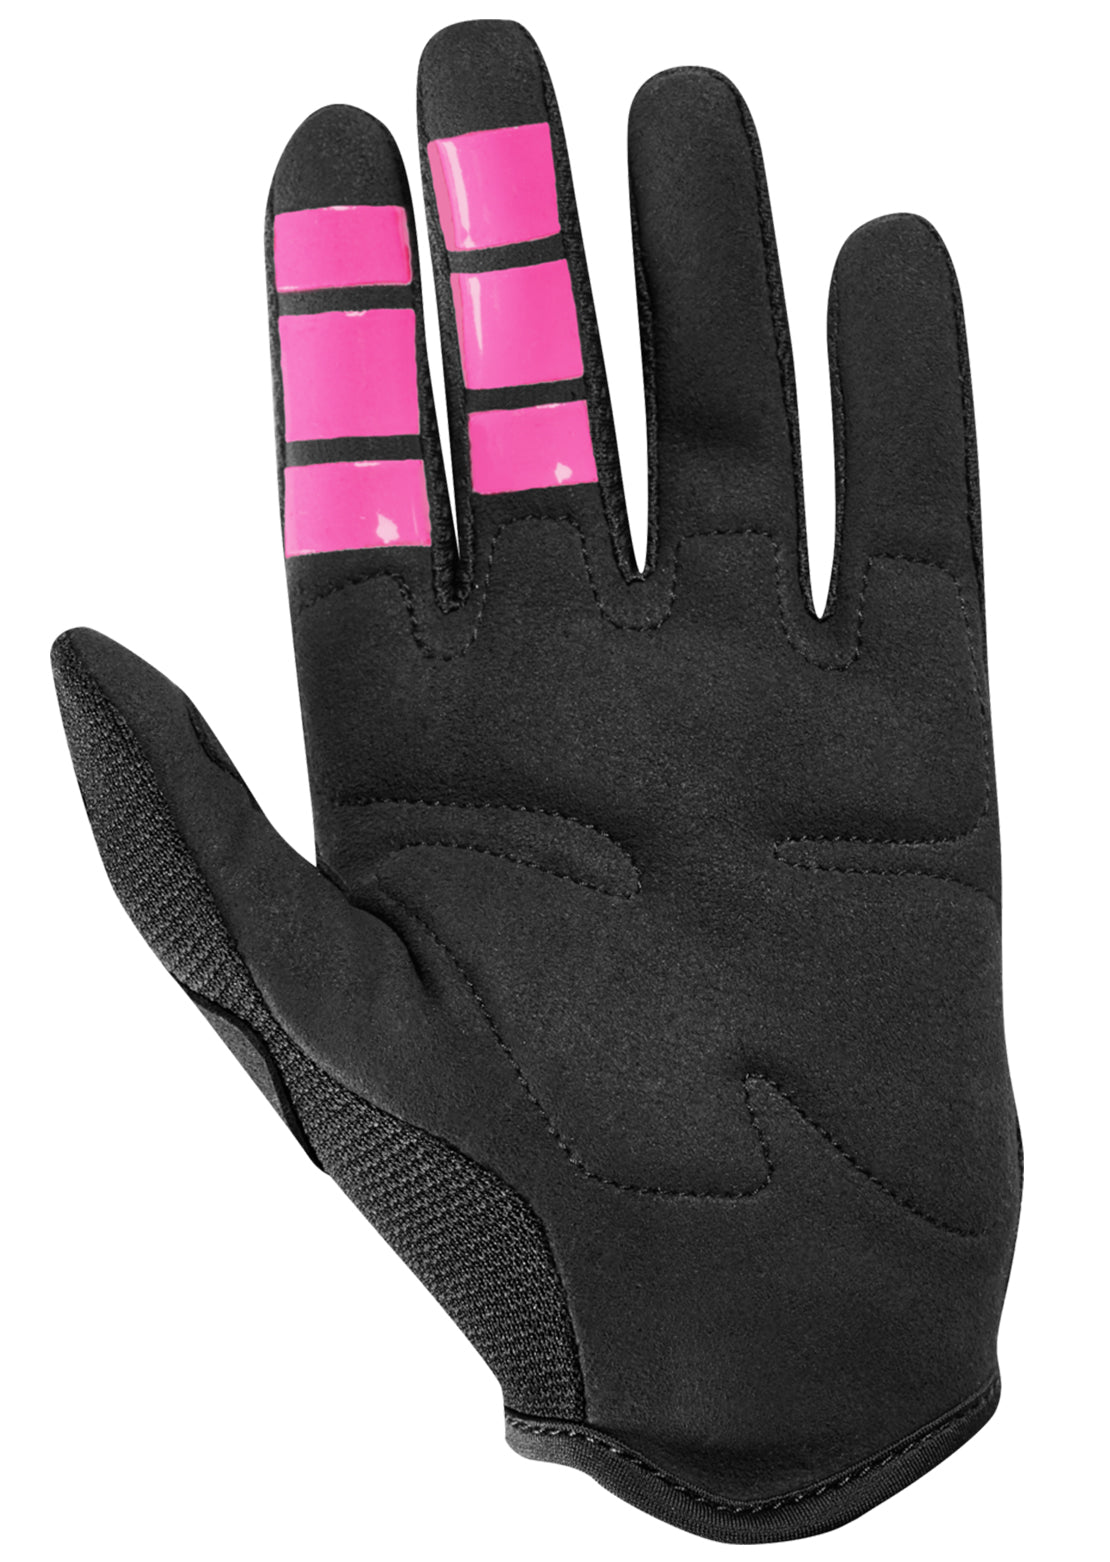 Fox Toddler Dirtpaw Mountain Bike Gloves Black/Pink